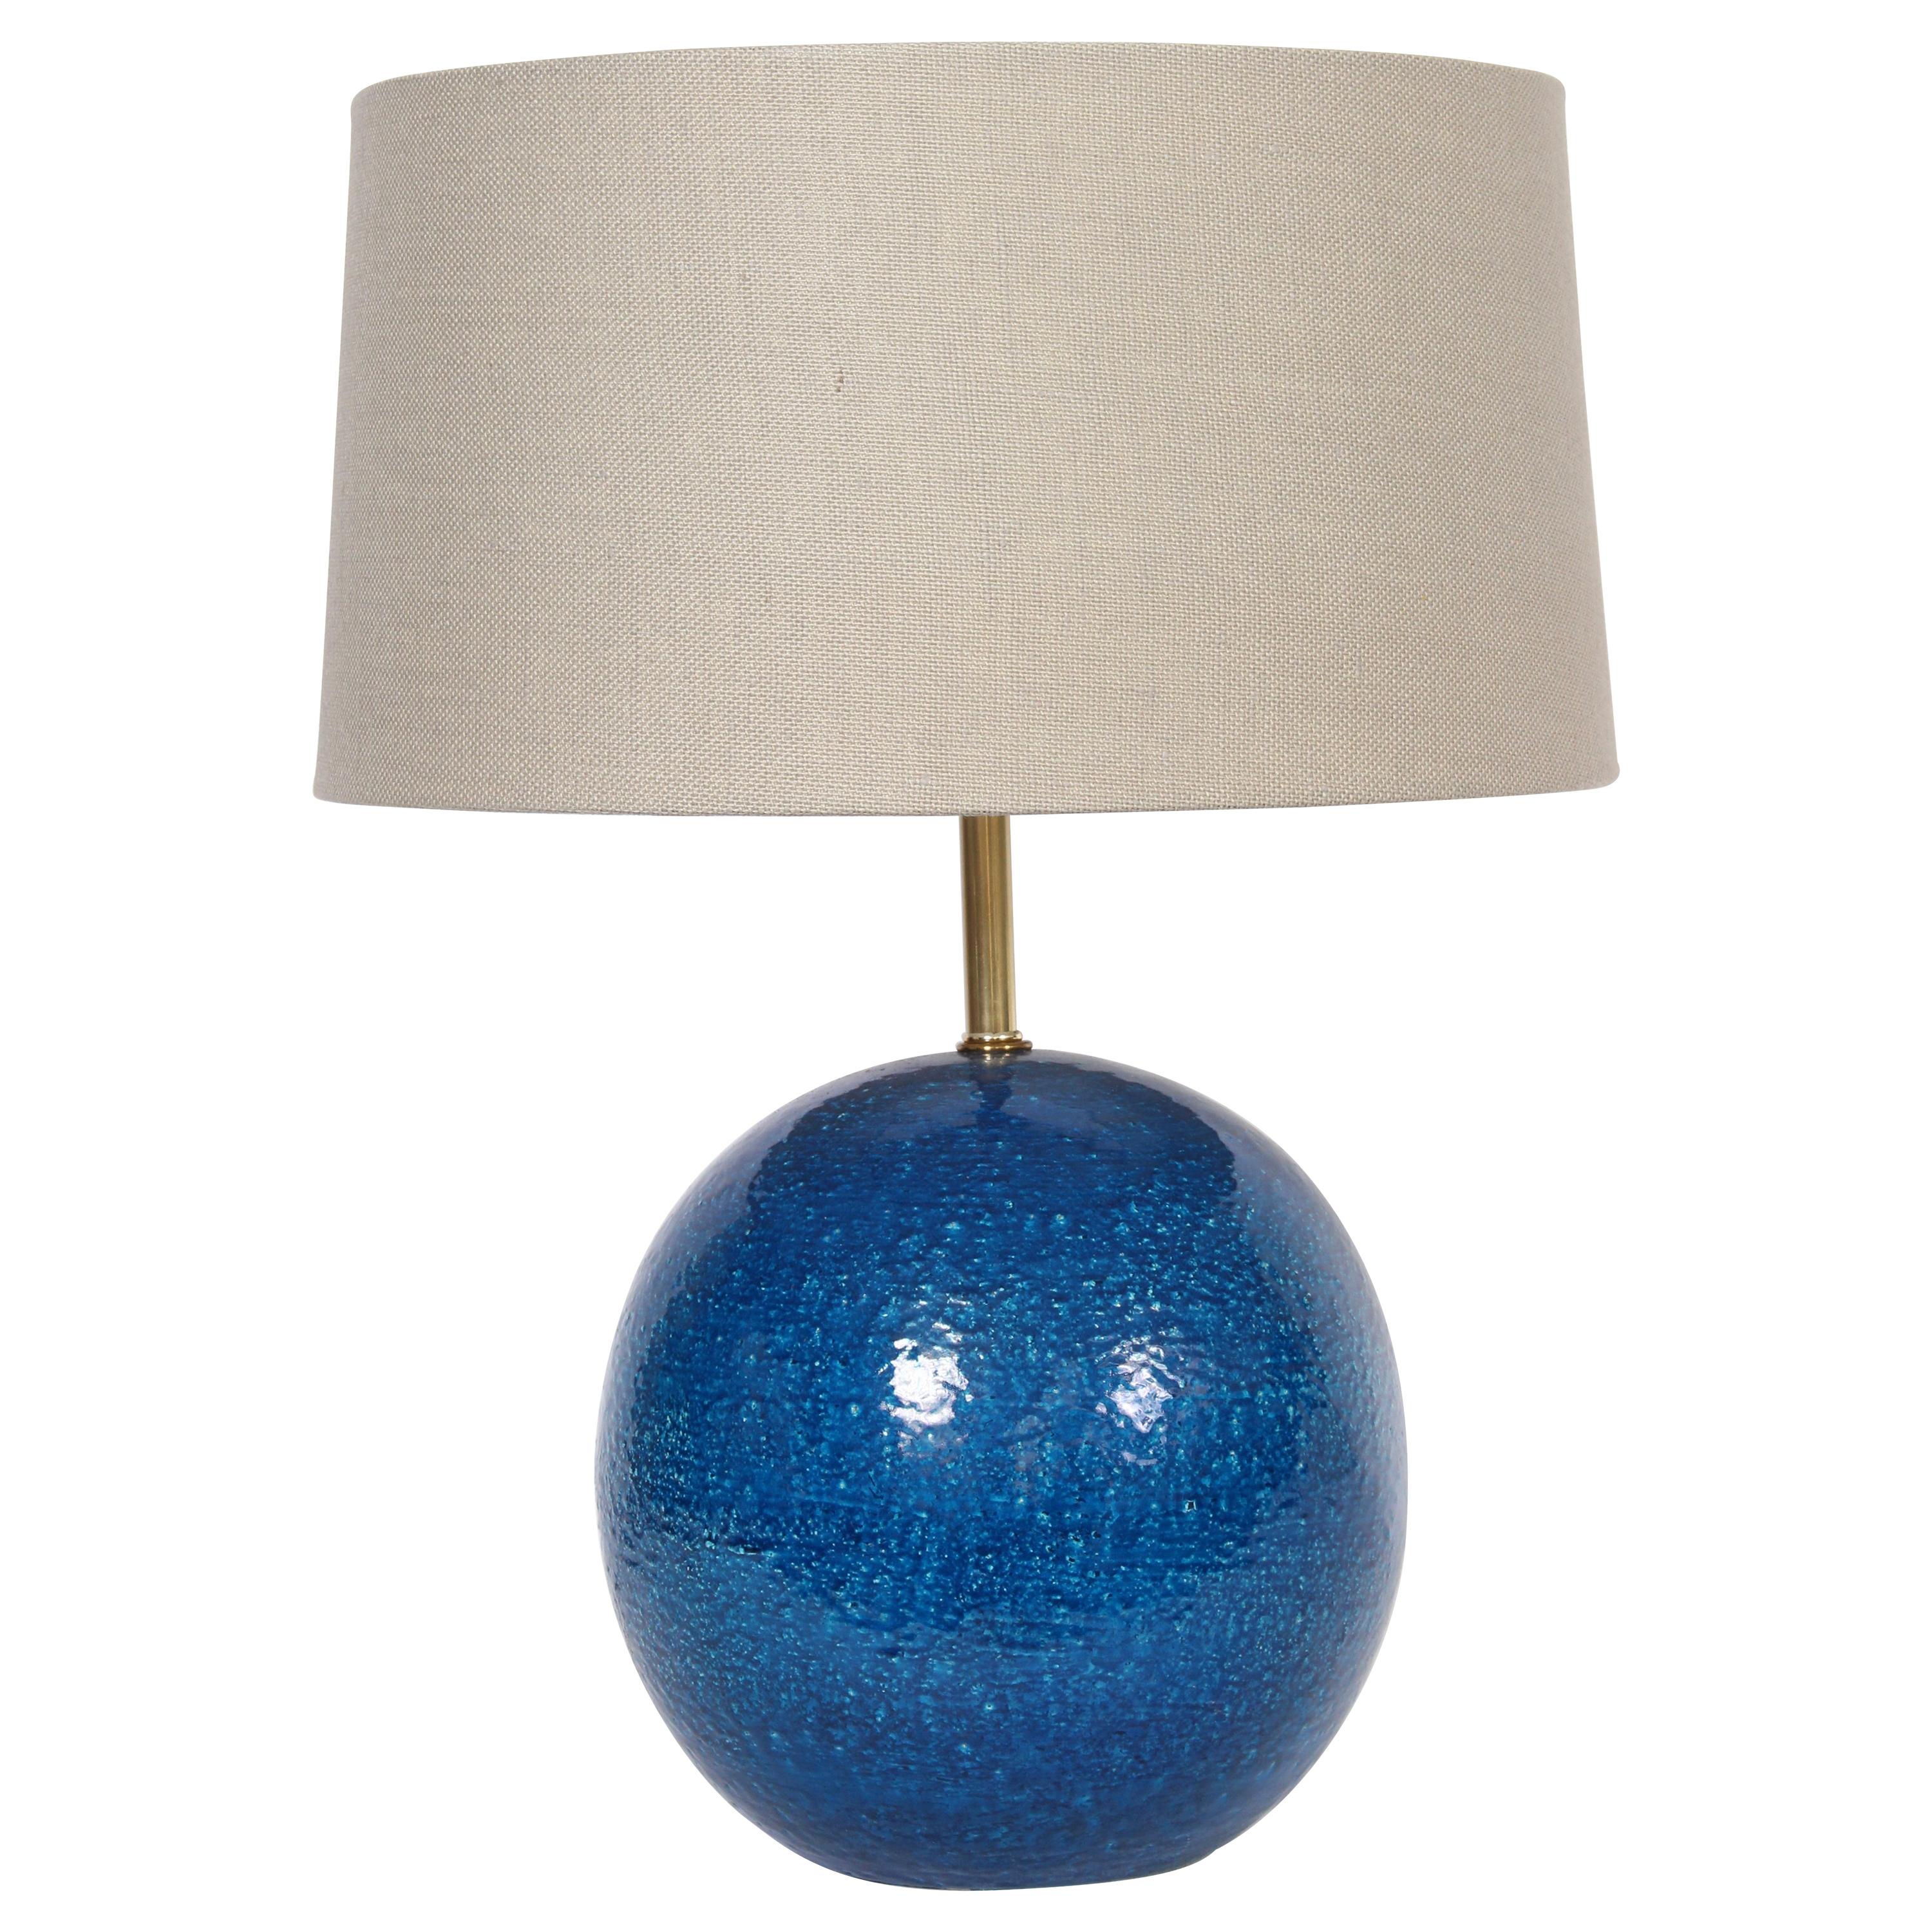 Aldo Londo for Bitossi Persian Blue "Ball" Pottery Table Lamp, circa 1950s For Sale